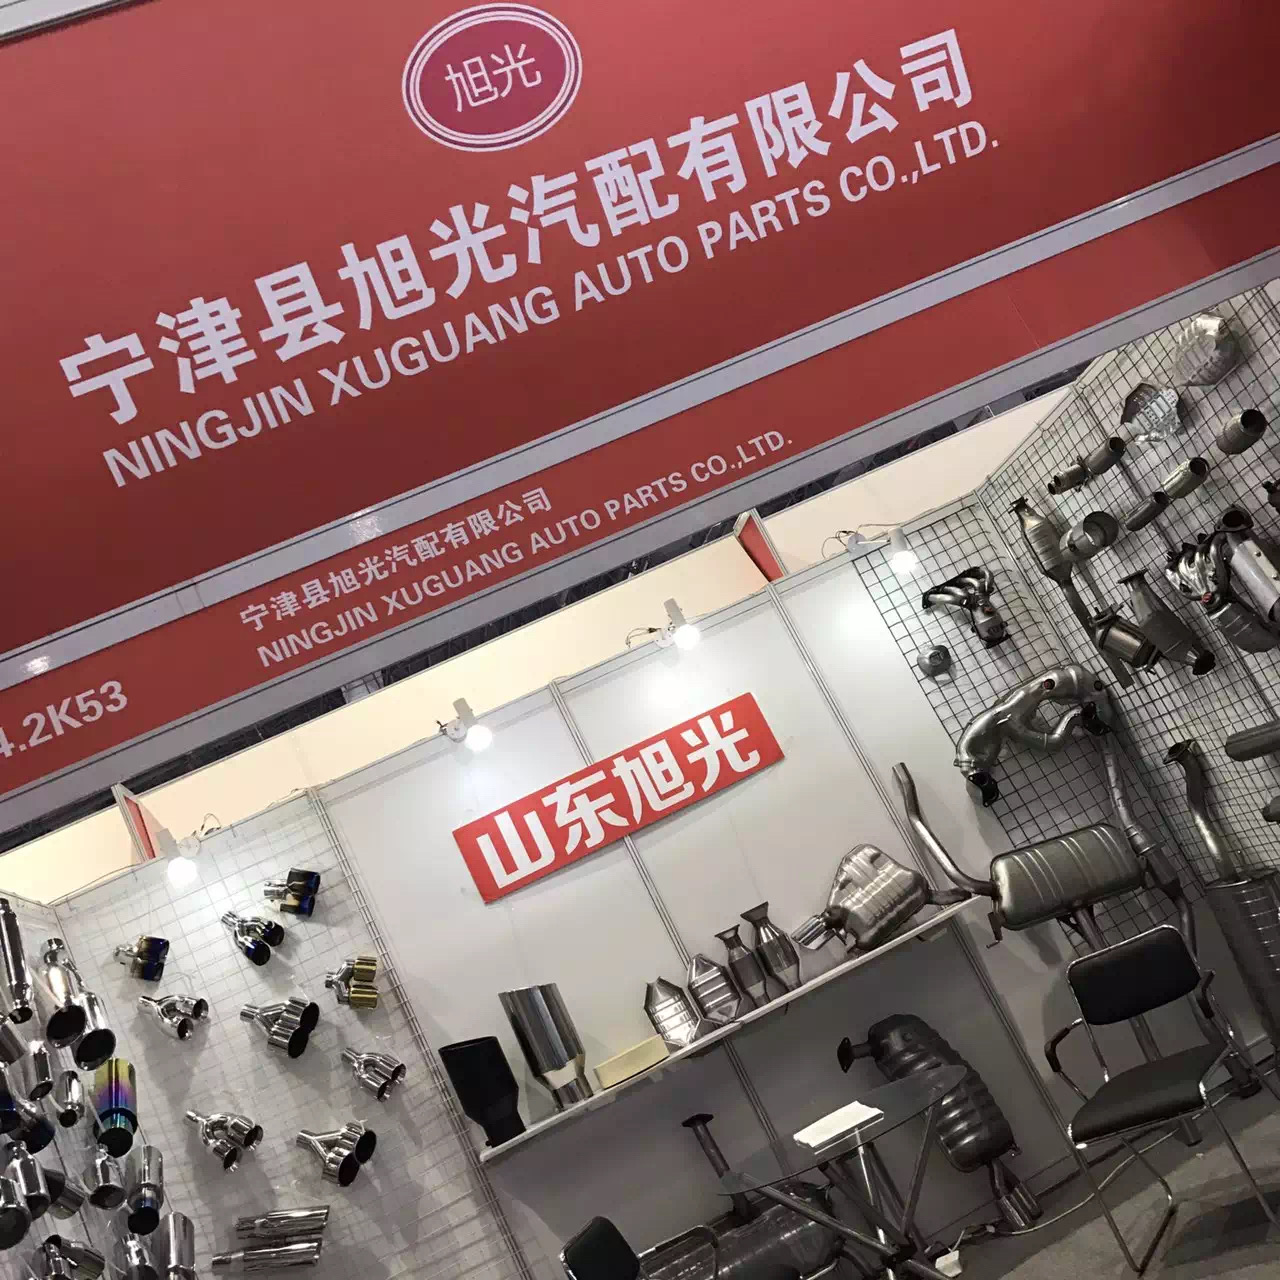 Shanghai International Auto Parts Fair